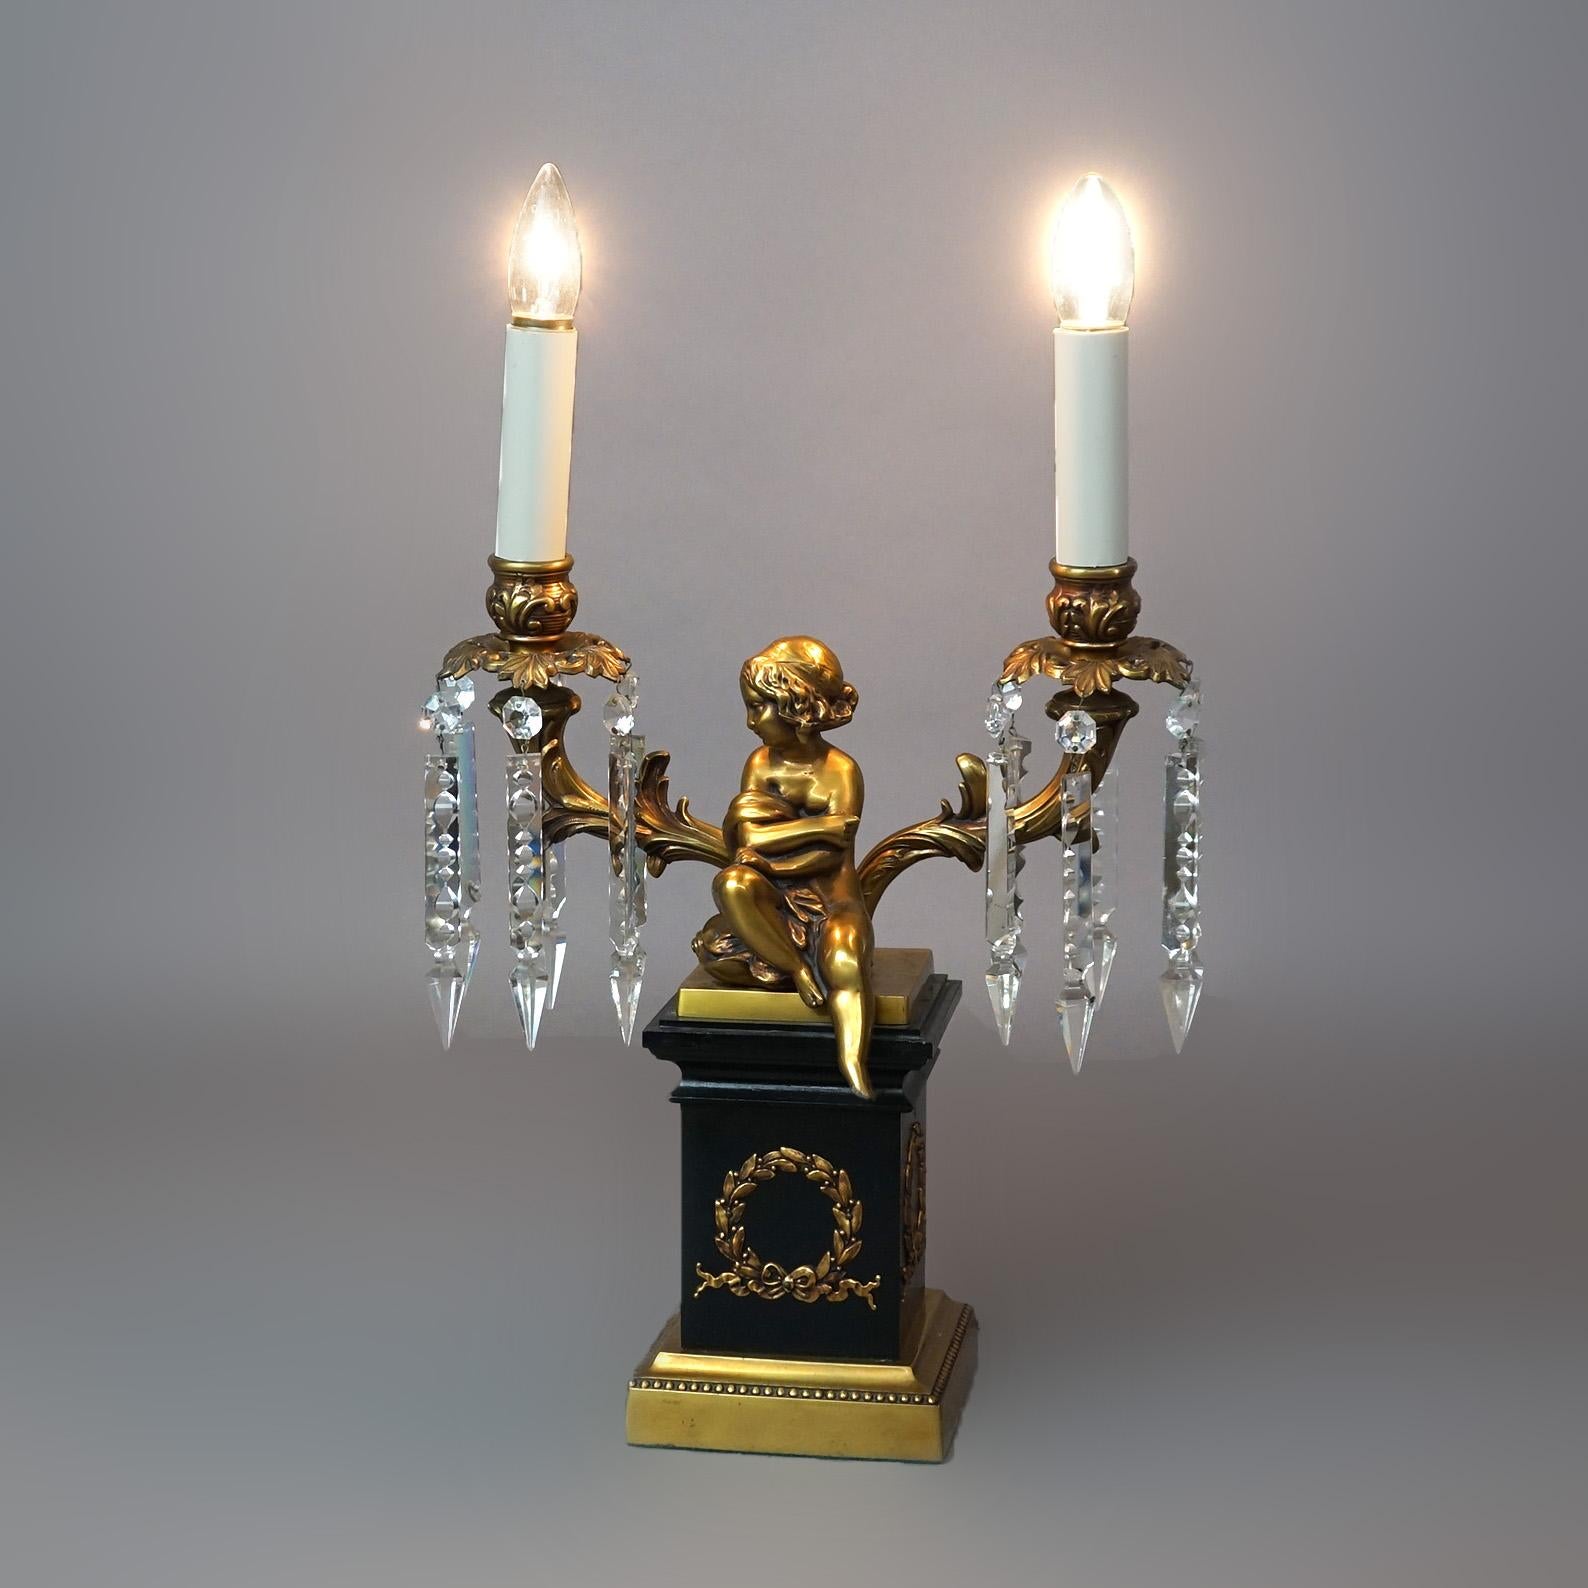 Lampe chérubin néoclassique en laiton et métal ébonisé avec deux bras se terminant par des bougies, 20e siècle

Dimensions - 22,5 